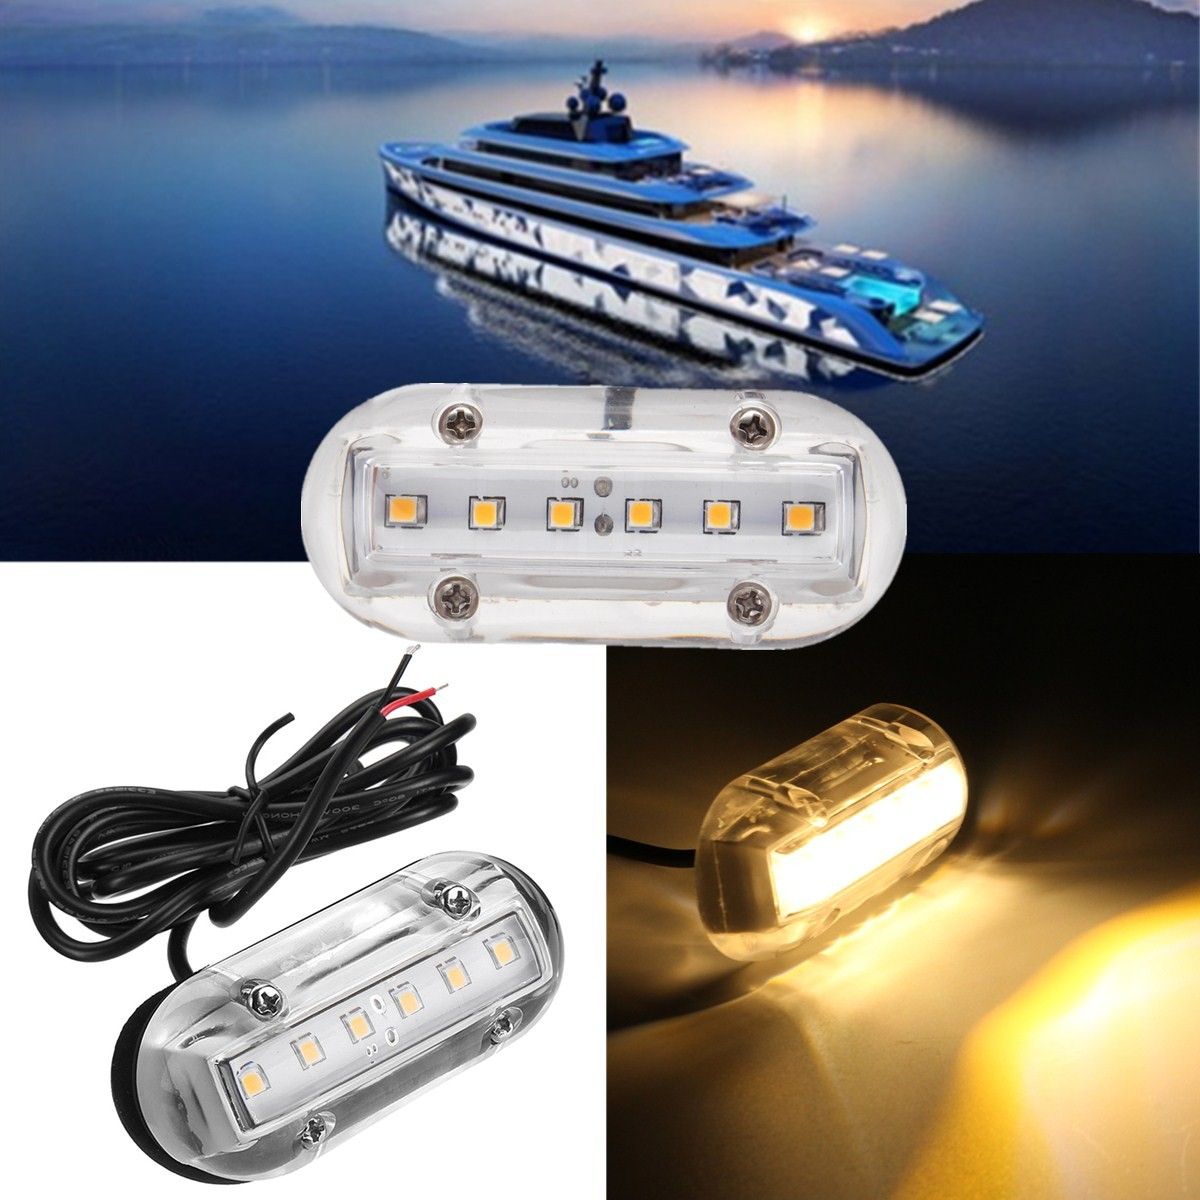 Extaum luci subacquee per barca,12V 6LED Luci di poppa per barche Luce a LED per illuminazione Nuoto Yacht da pesca Guida Navigazione marina Lampade subacquee impermeabili 